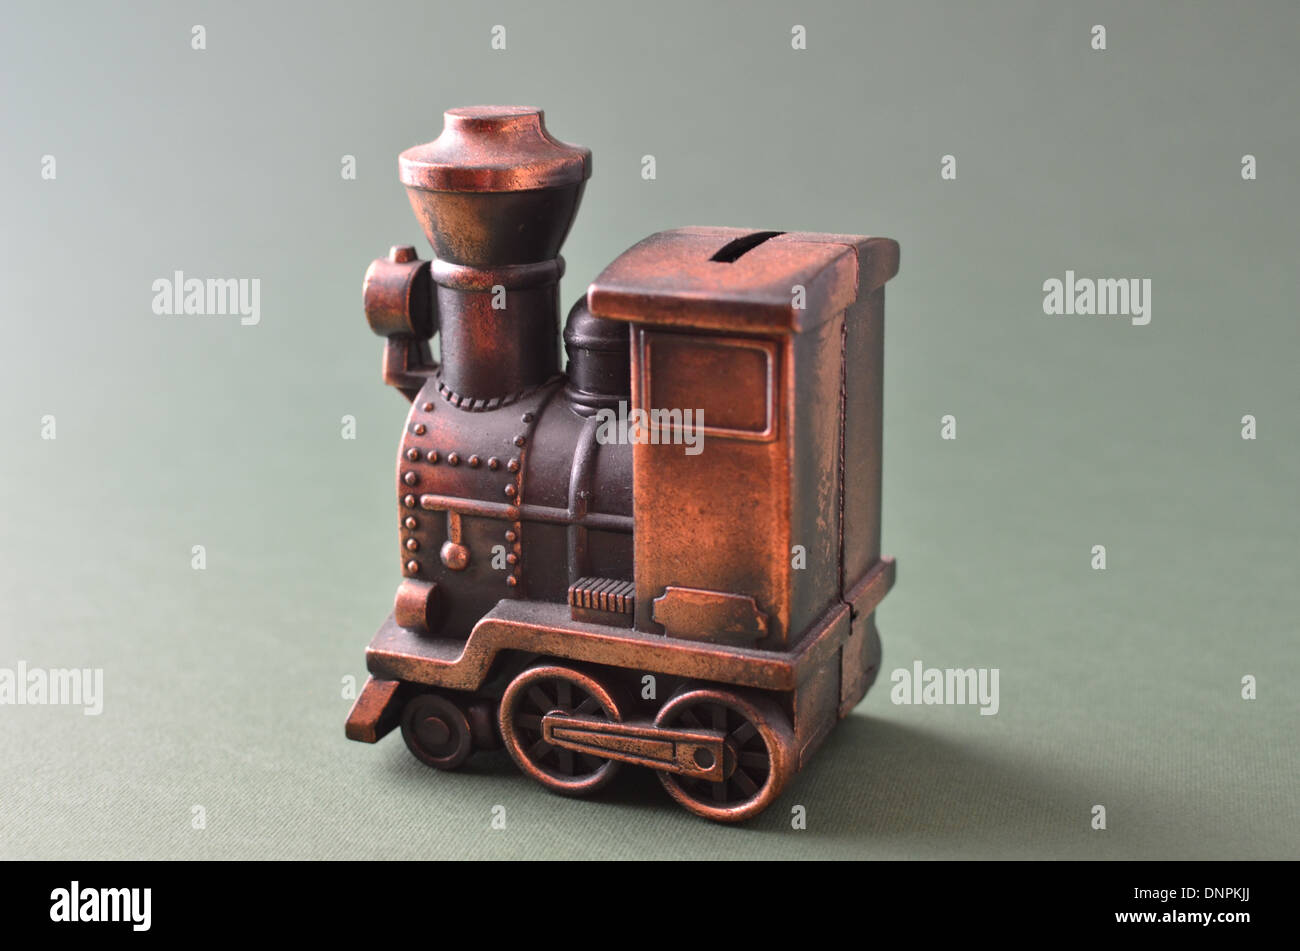 copper steam train money box Stock Photo